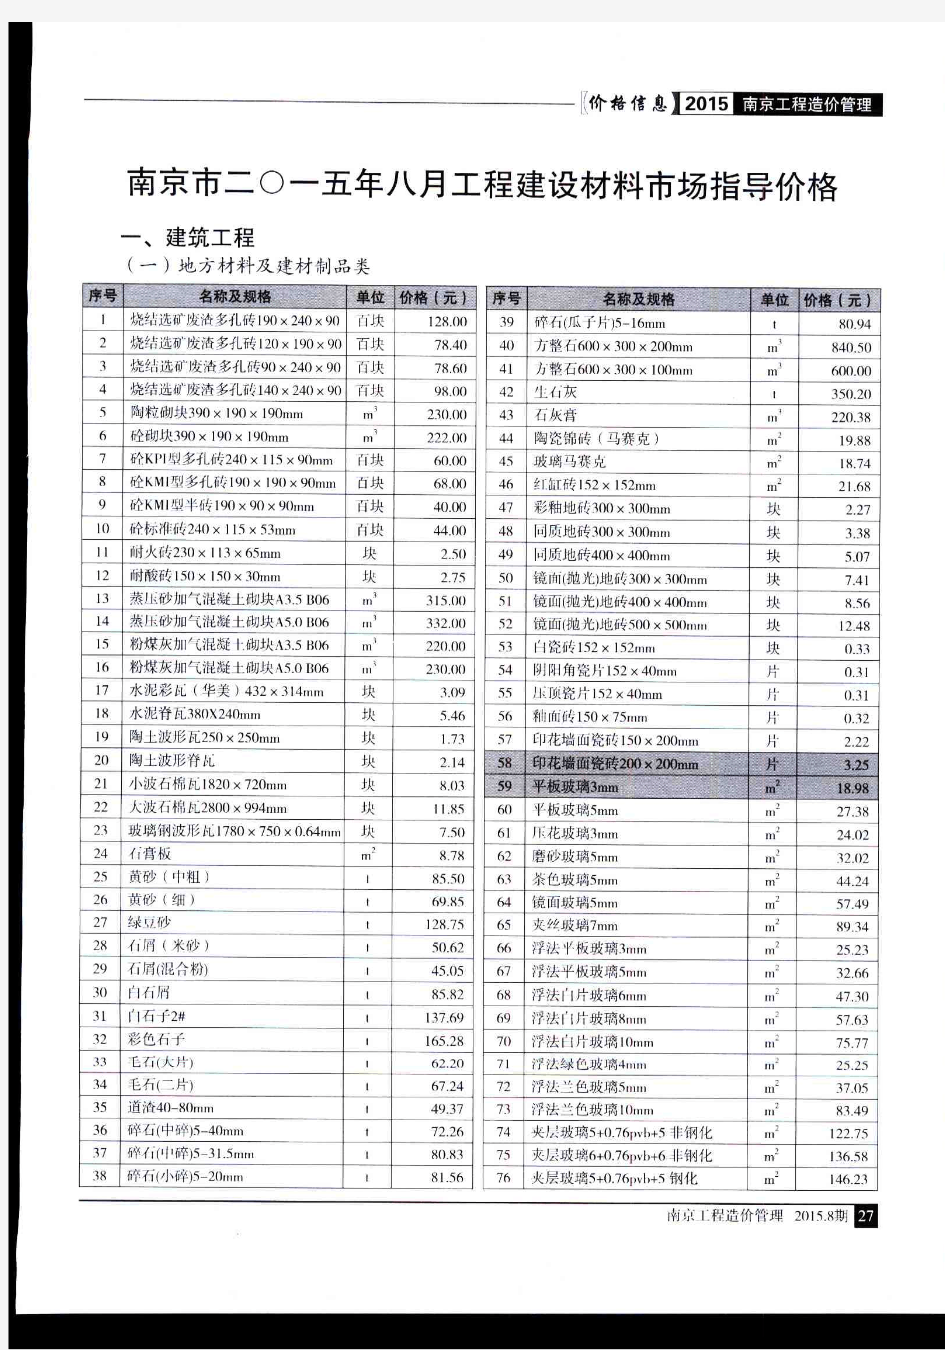 南京市材料信息指导价2015年8月